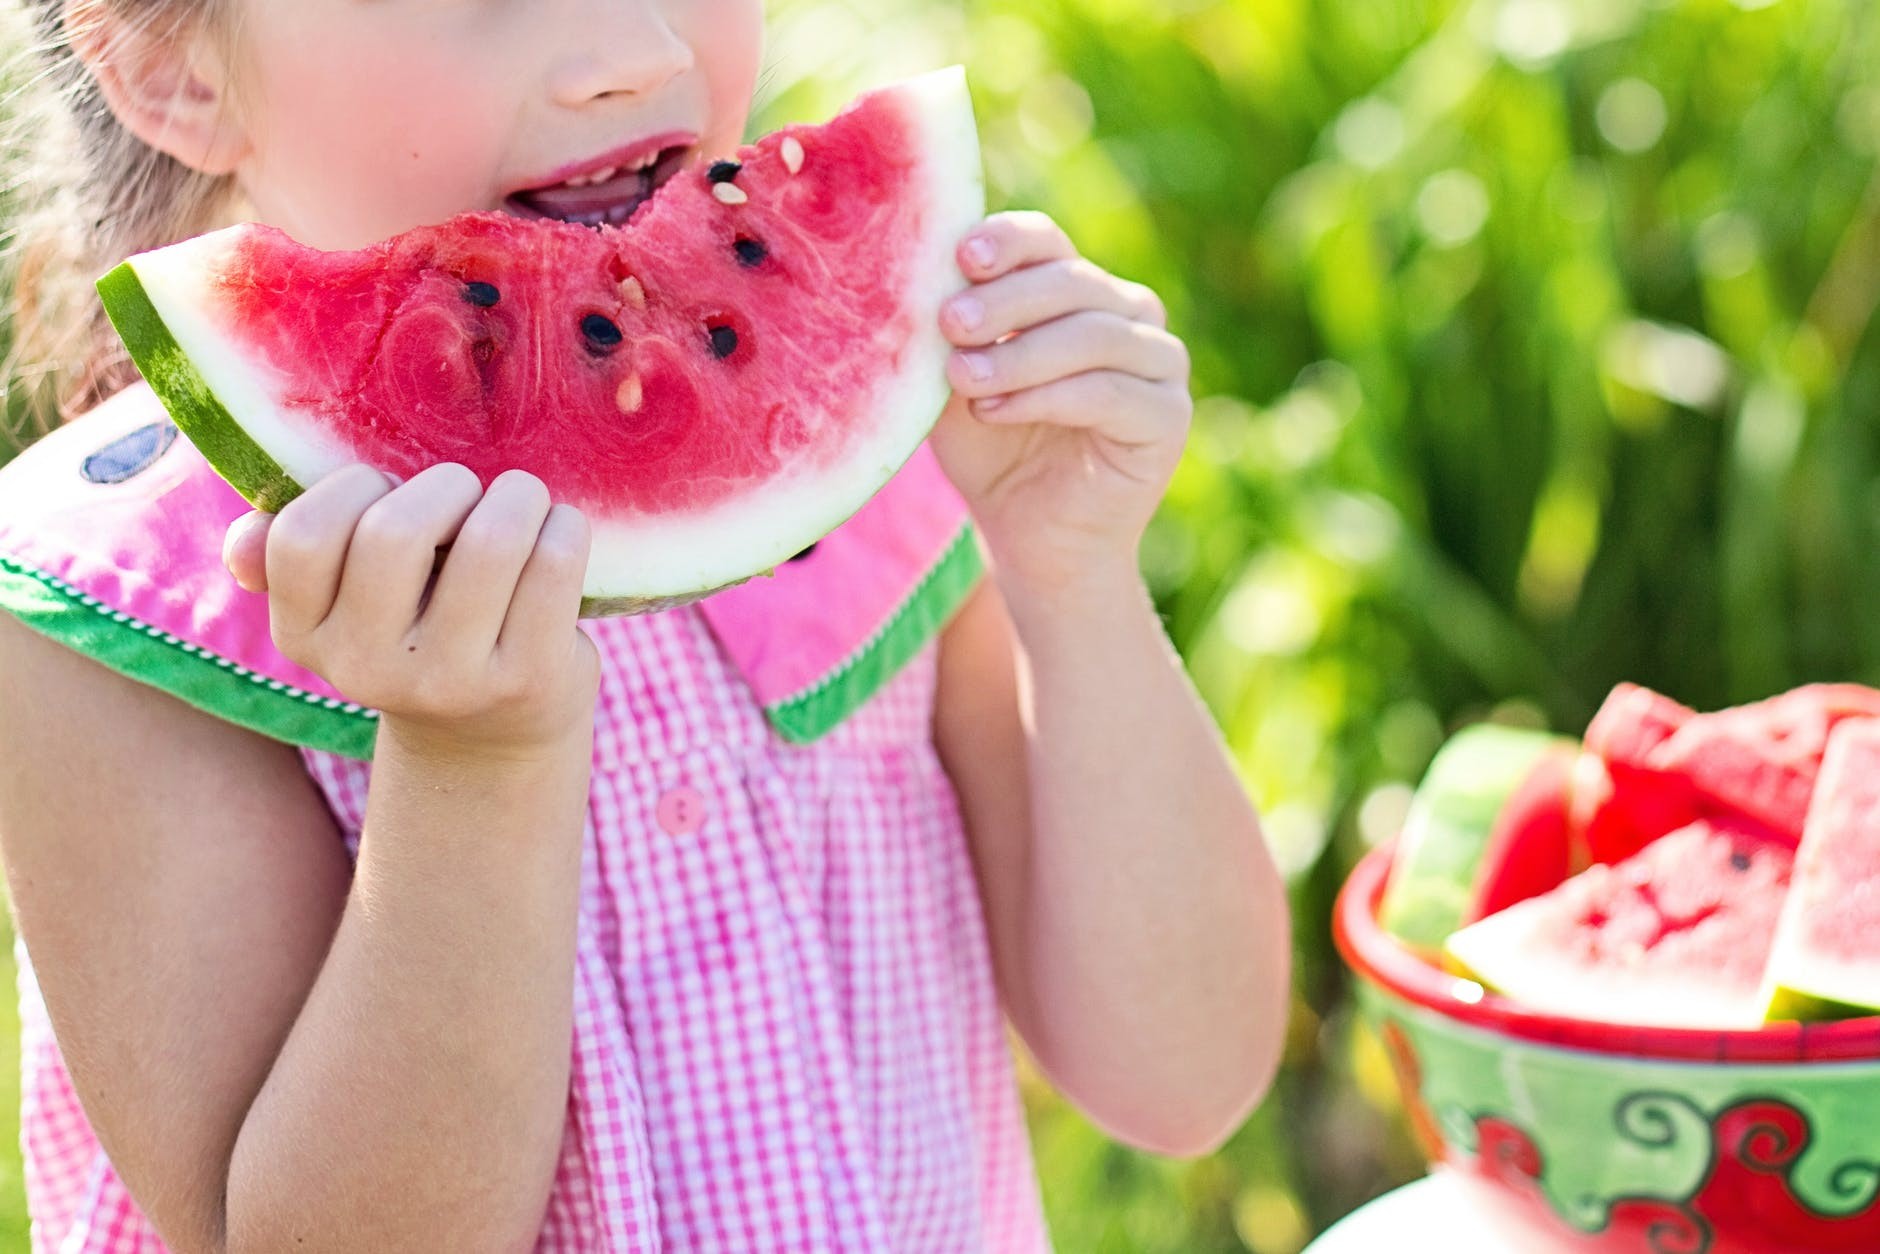 Crianças que veem comidas saudáveis na TV tendem a se alimentar melhor (Foto: Pixabay)